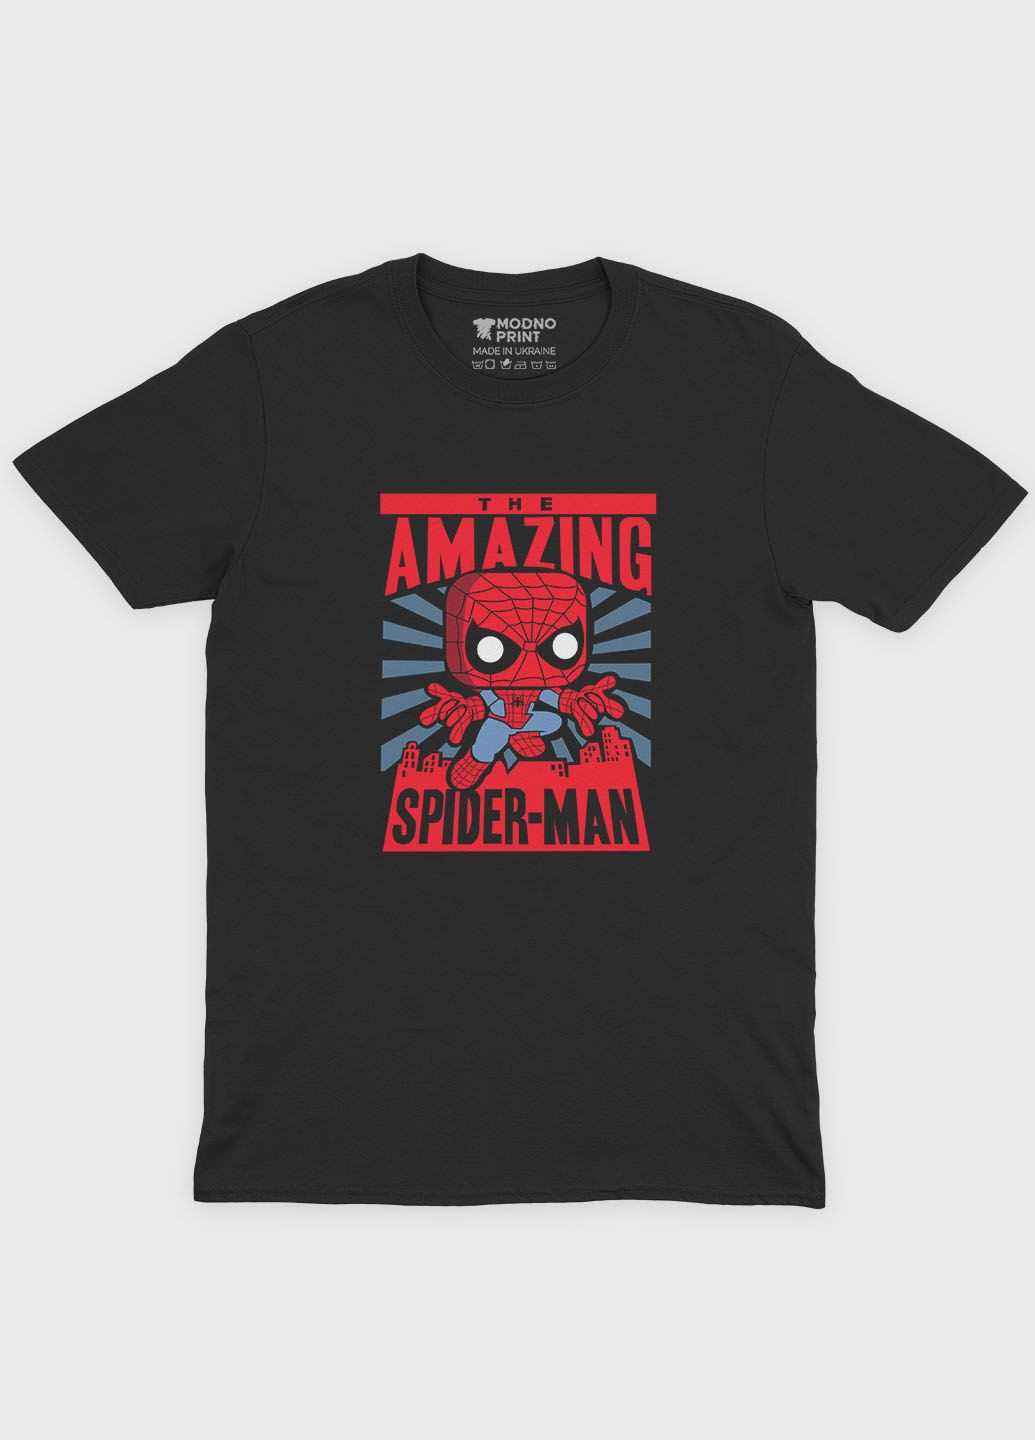 Черная демисезонная футболка для девочки с принтом супергероя - человек-паук (ts001-1-gl-006-014-026-g) Modno